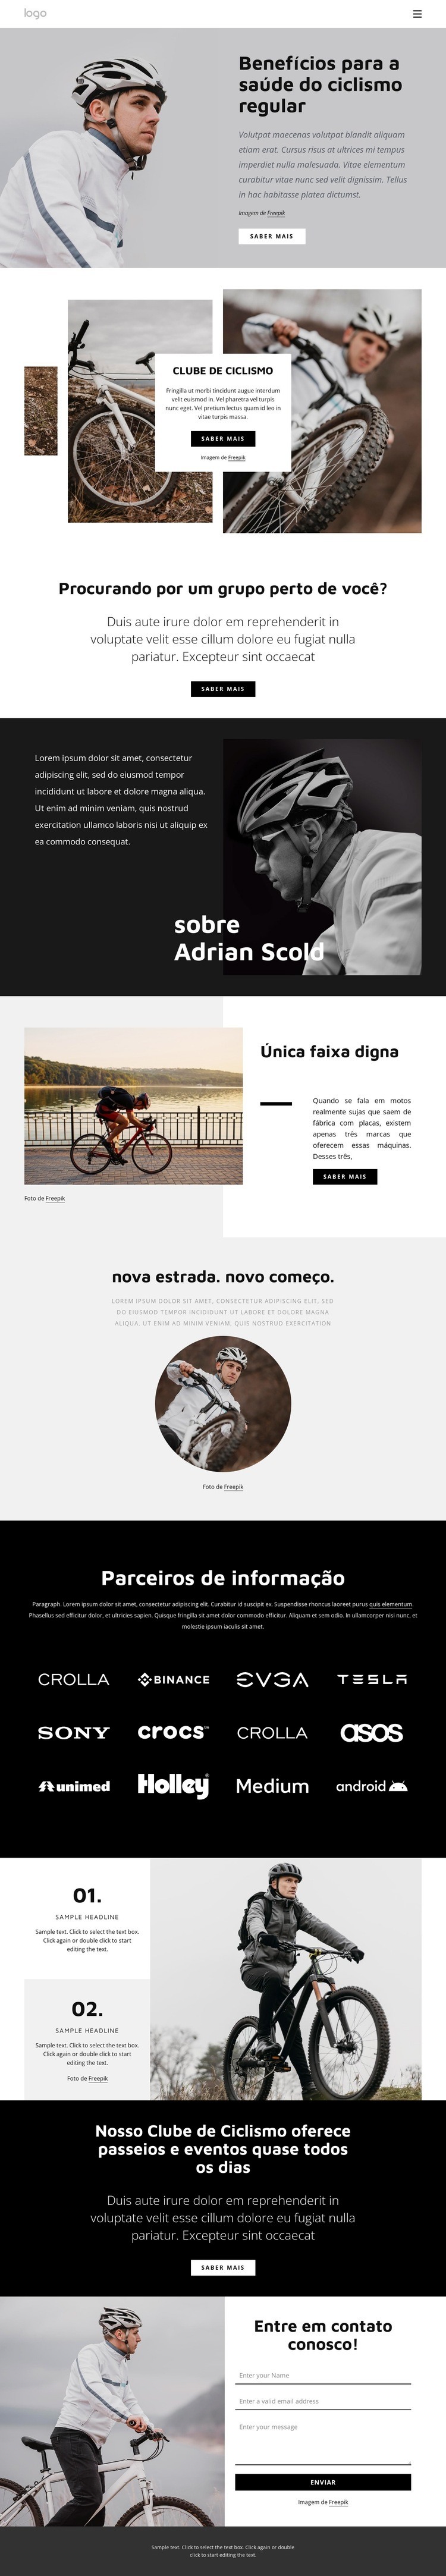 Benefícios do ciclismo regular Design do site